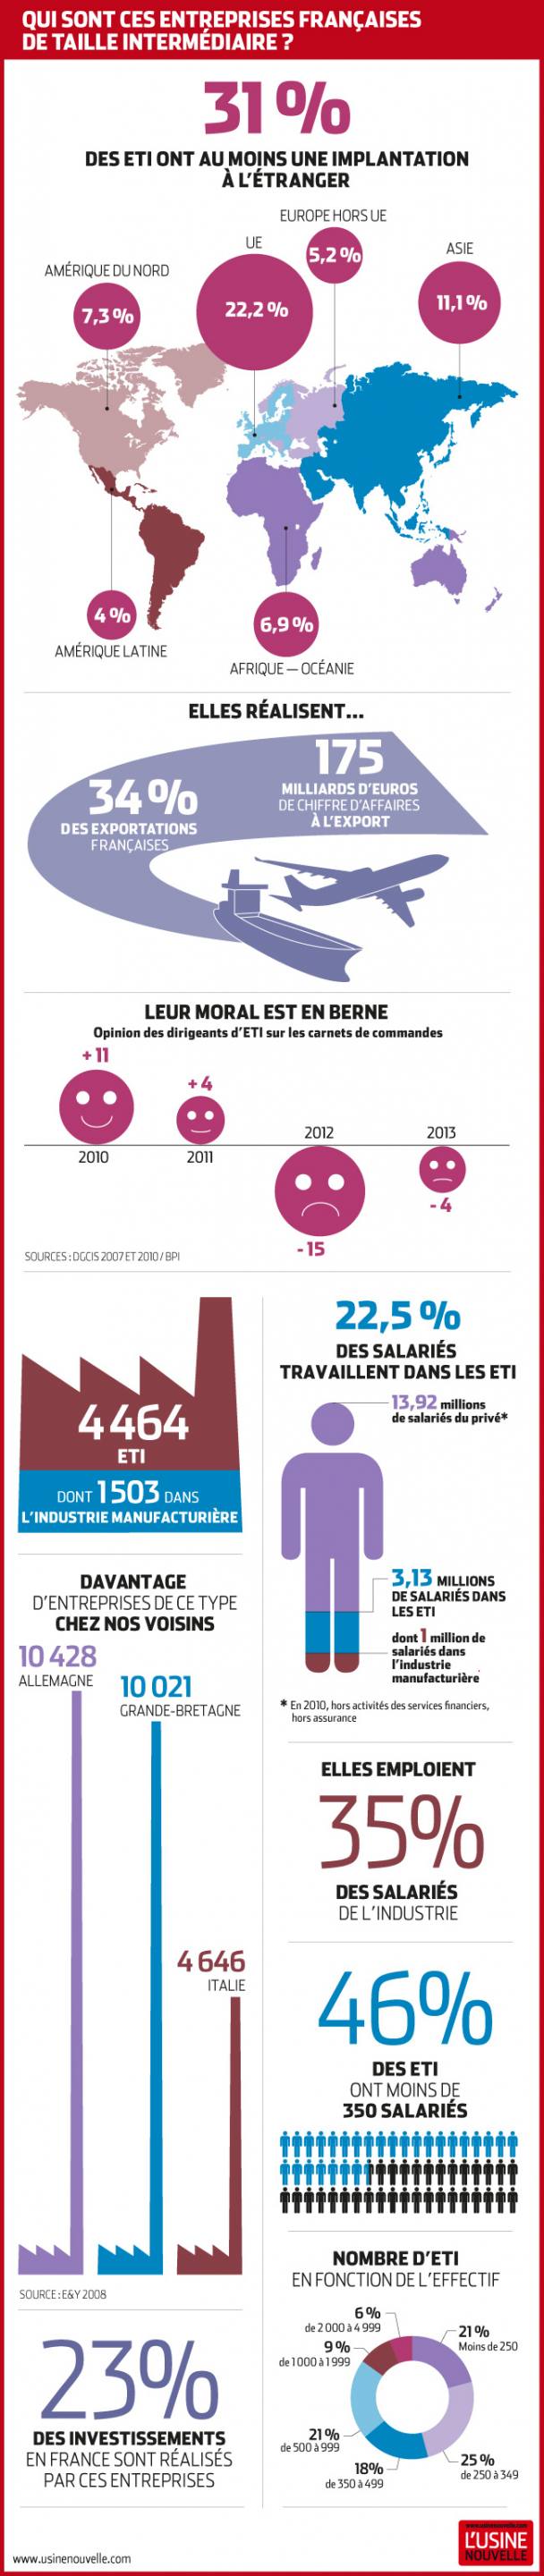 [infographie] Les entreprises de taille intermédiaires (ETI), championnes de France